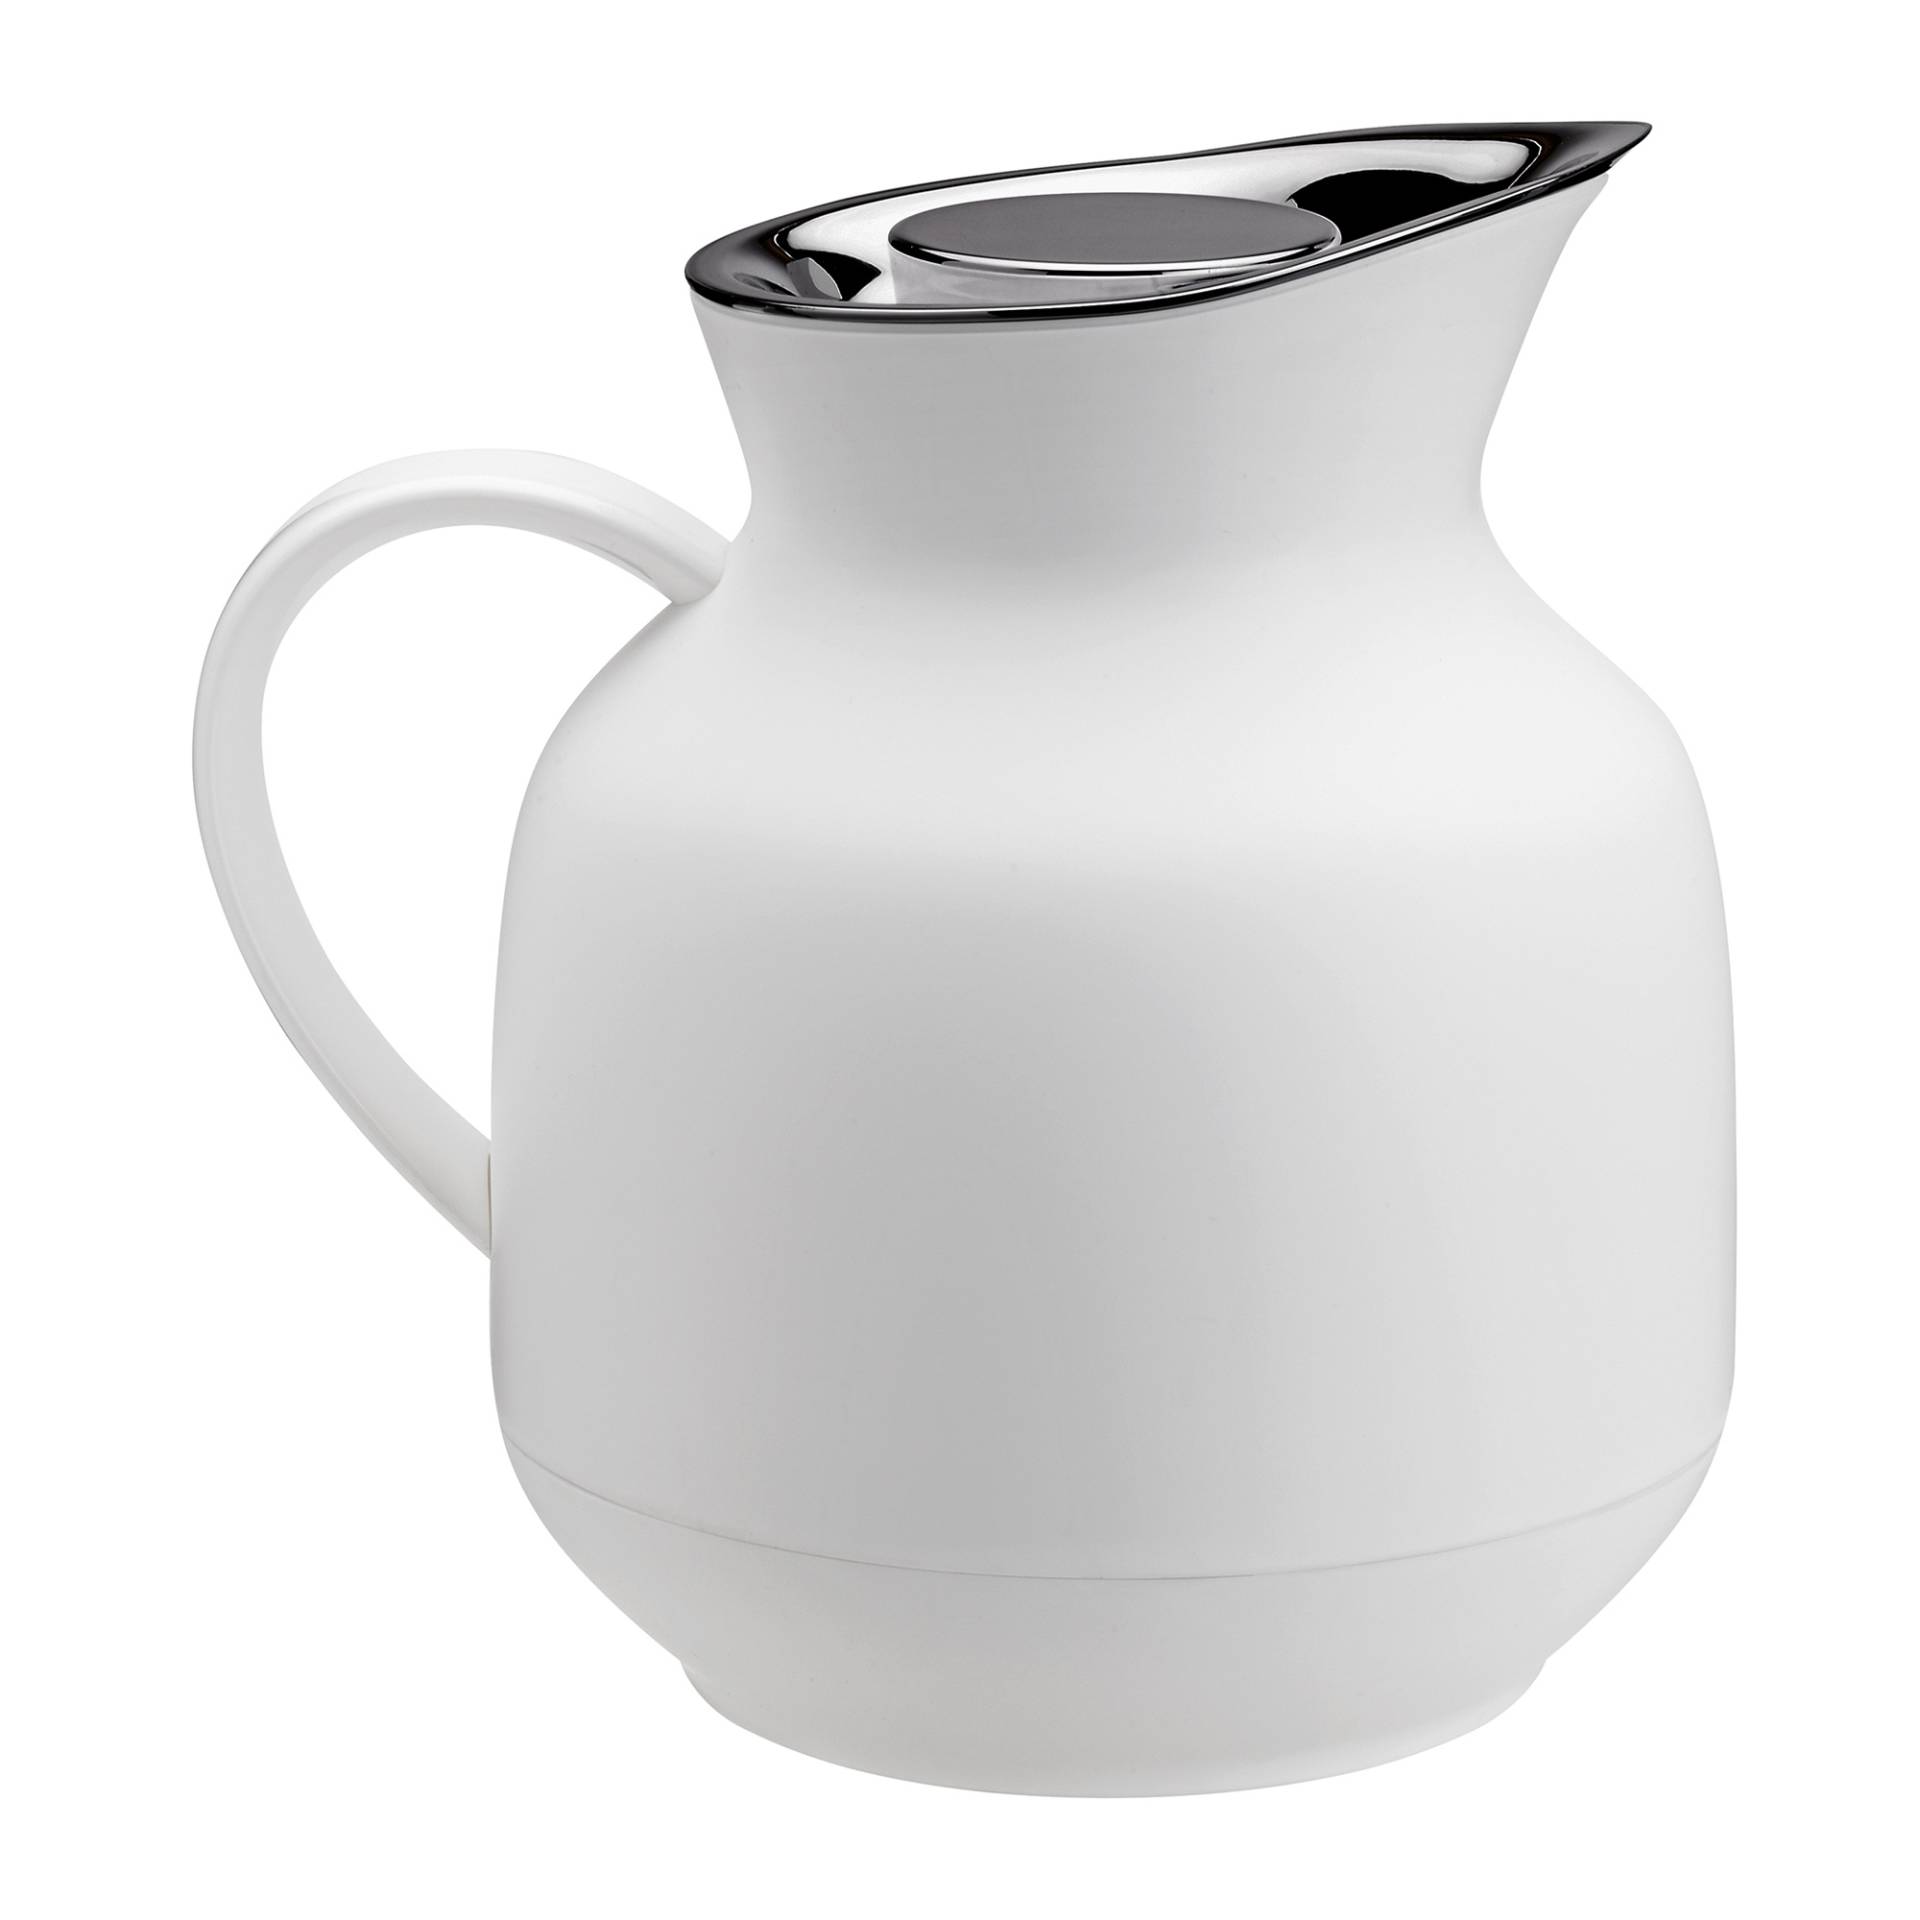 Stelton - Amphora Teeisolierkanne 1L - soft weiß/BPA- und Phthalatfrei/LxBxH 19,8x16x20,5cm/nicht spülmaschinenfest/Glaseinsatz auswechselbar von Stelton